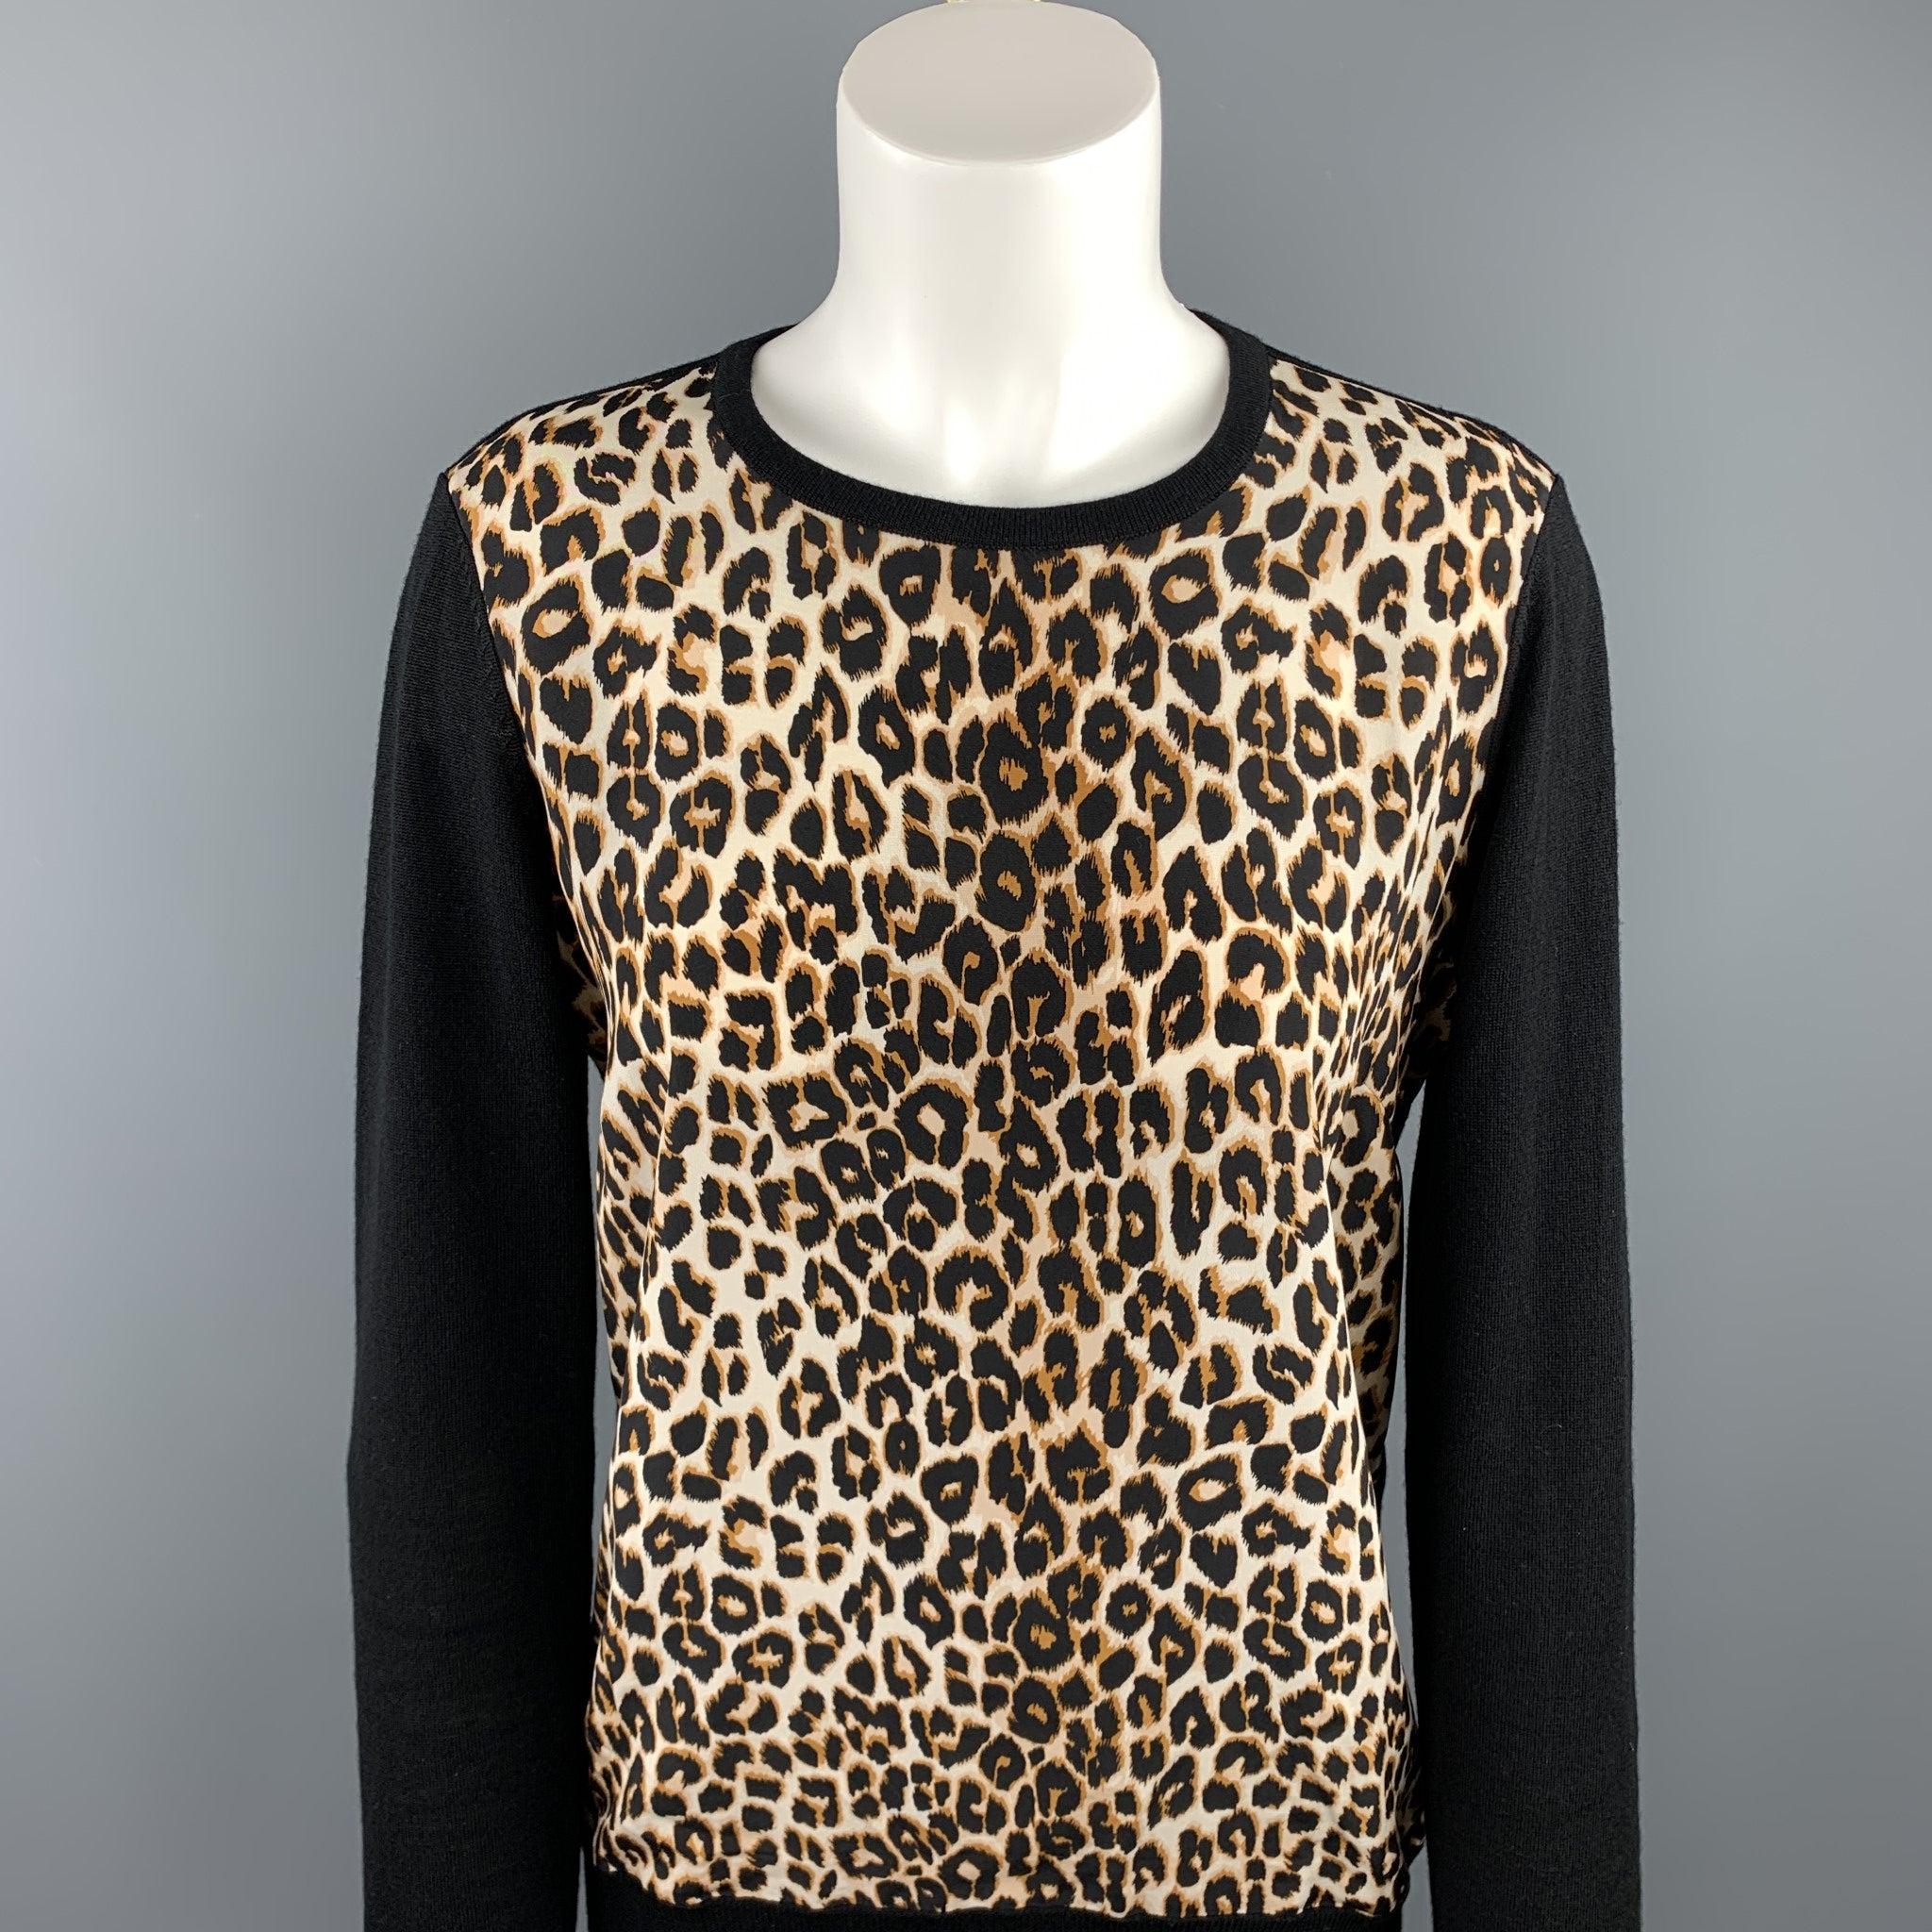 EQUIPMENT FEMME Pullover mit Rundhalsausschnitt aus schwarzer und hellbrauner Leopardenwolle/Seide. Ausgezeichneter, gebrauchter Zustand. 

Markiert:   M 

Abmessungen: 
 
Schultern: 17 Zoll 
Oberweite: 40 Zoll 
Ärmel: 26,5 Zoll 
Länge: 25 Zoll 

 